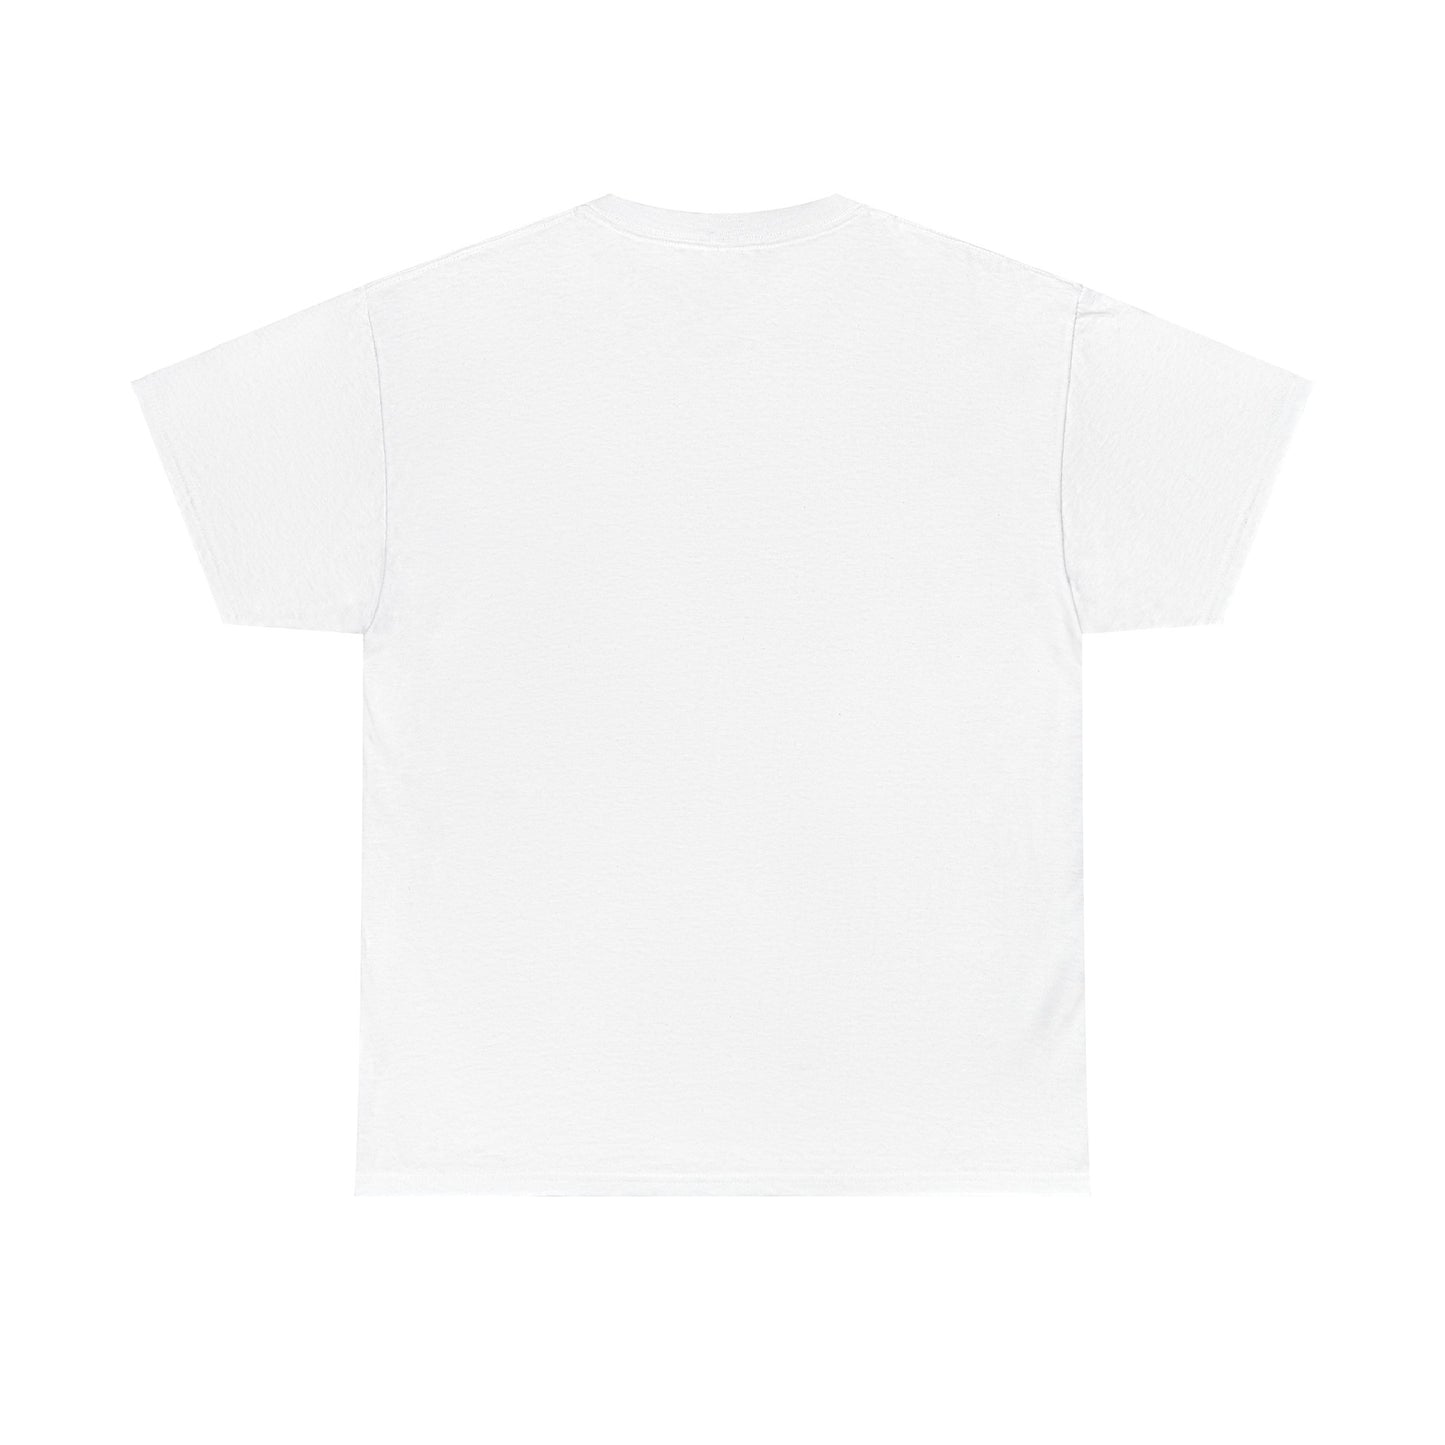 "Tariq" T-shirt